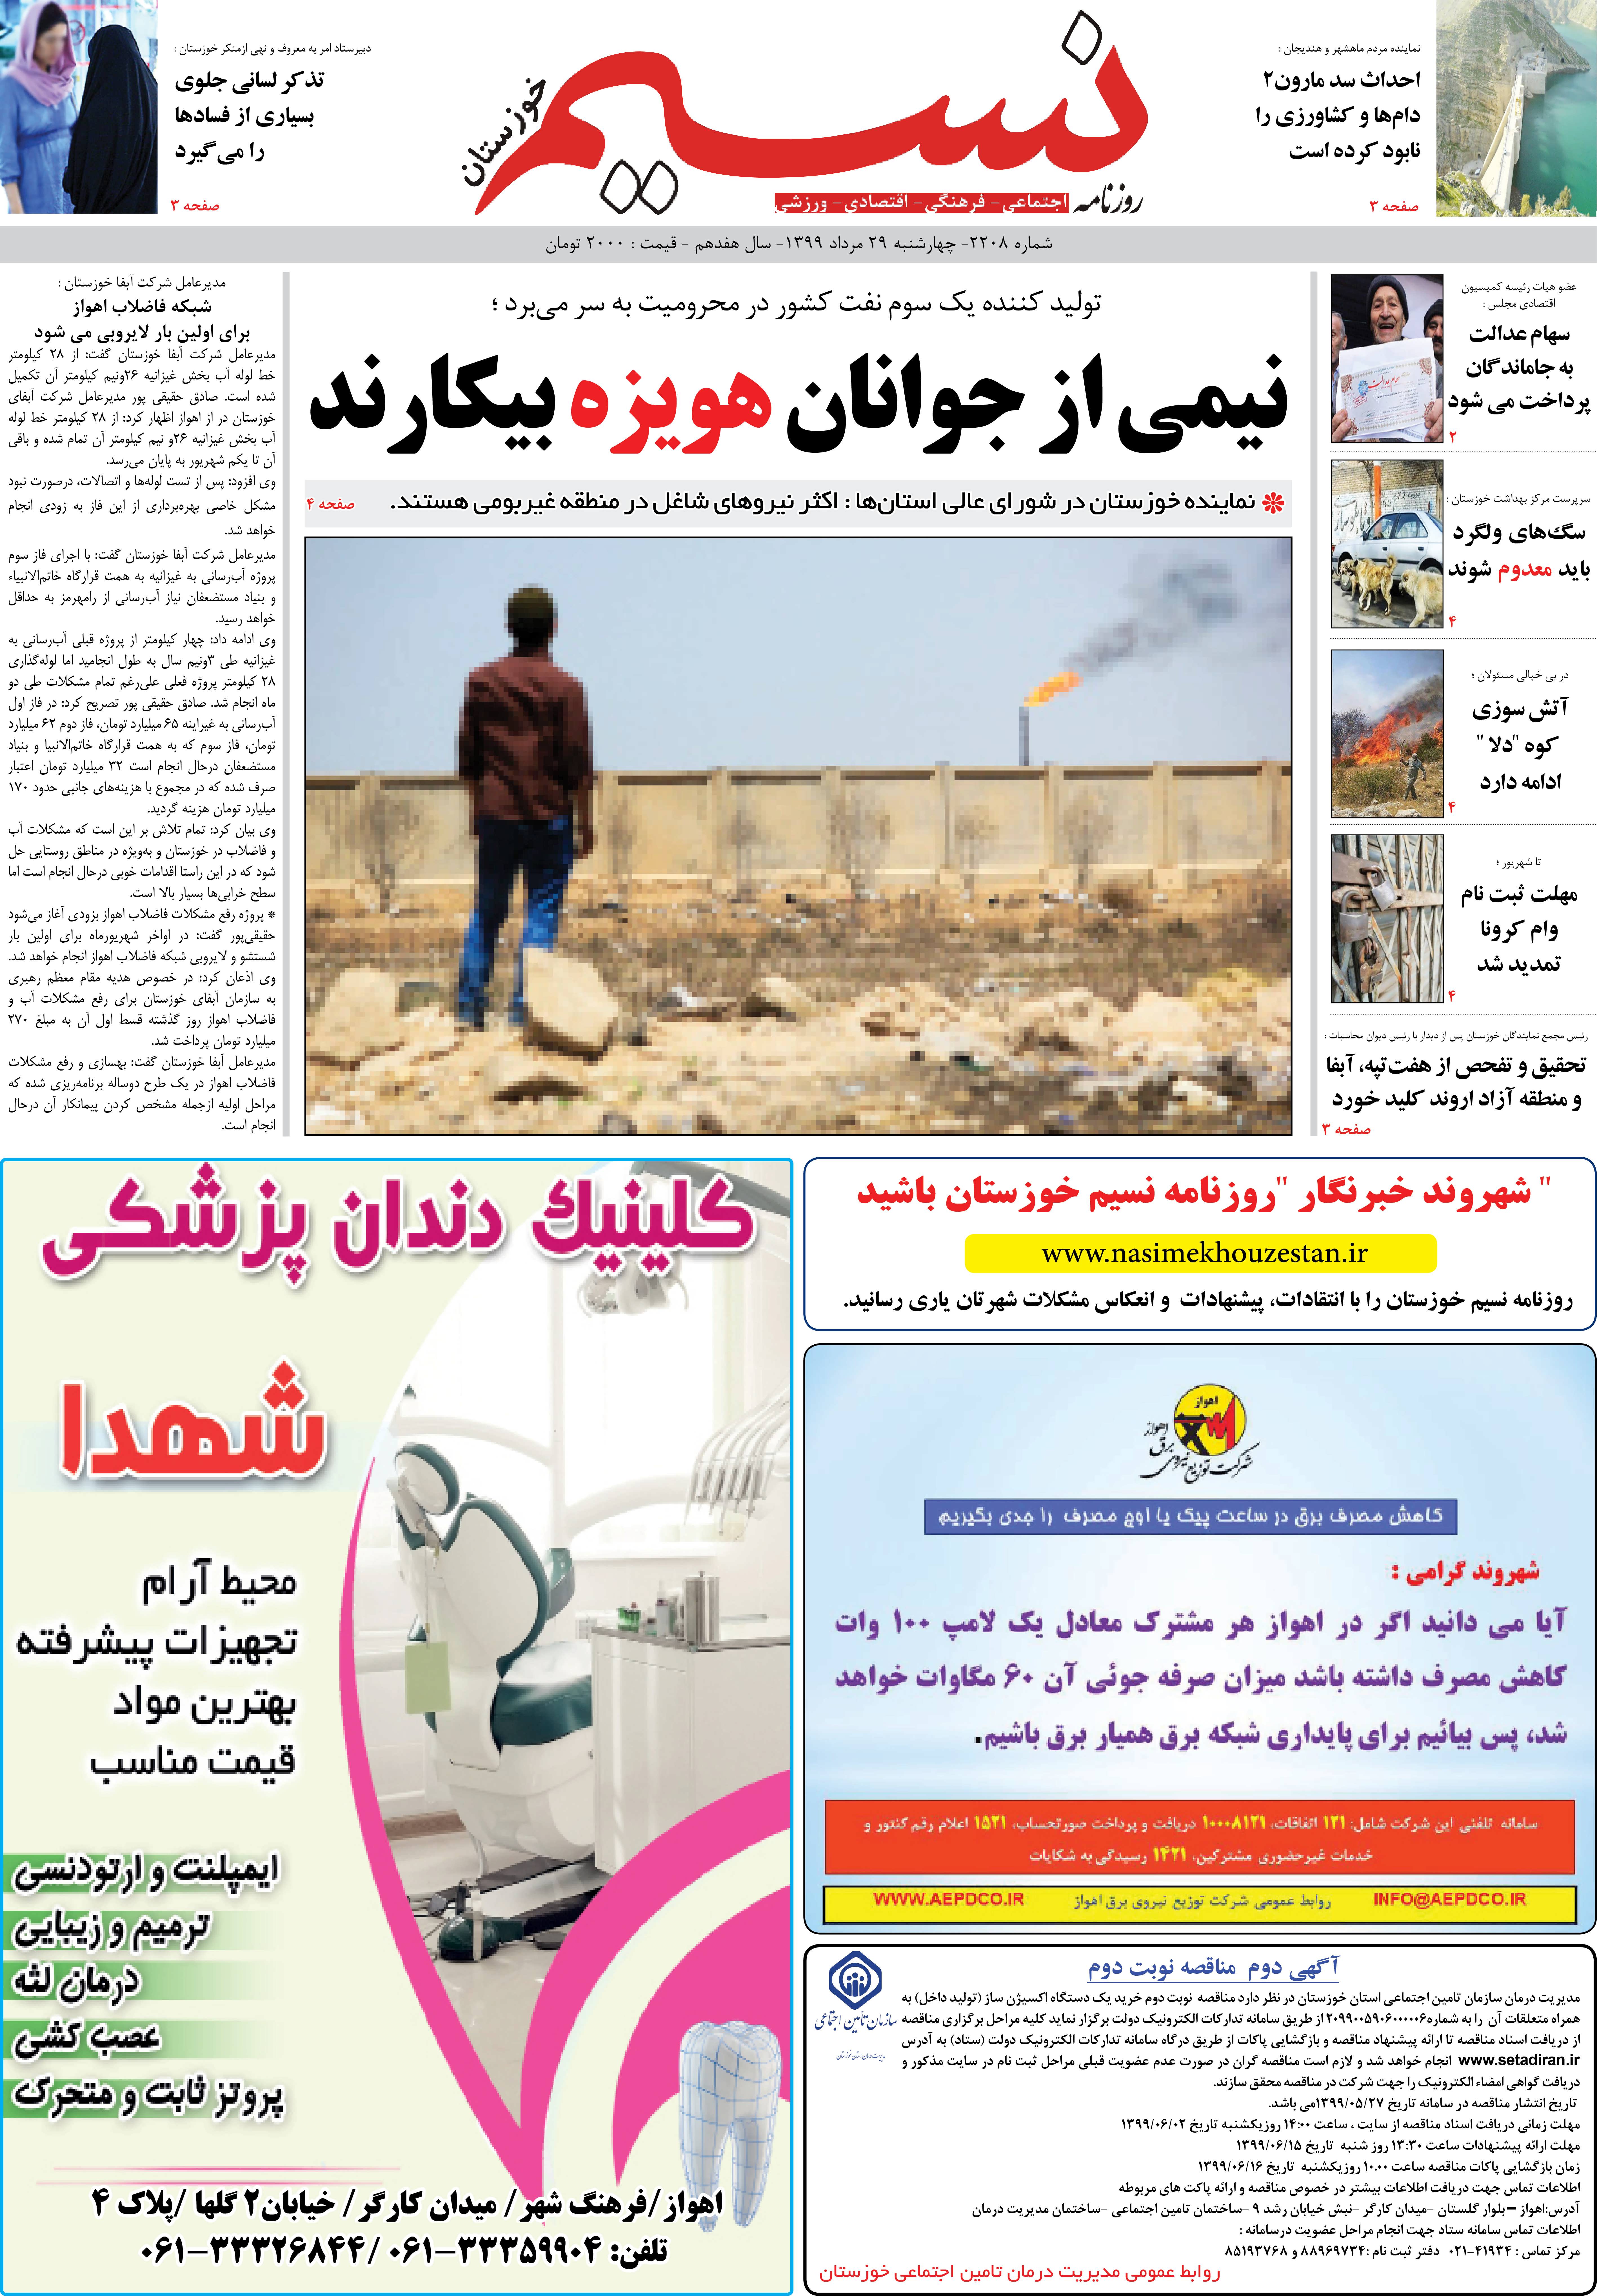 صفحه اصلی روزنامه نسیم شماره 2208 